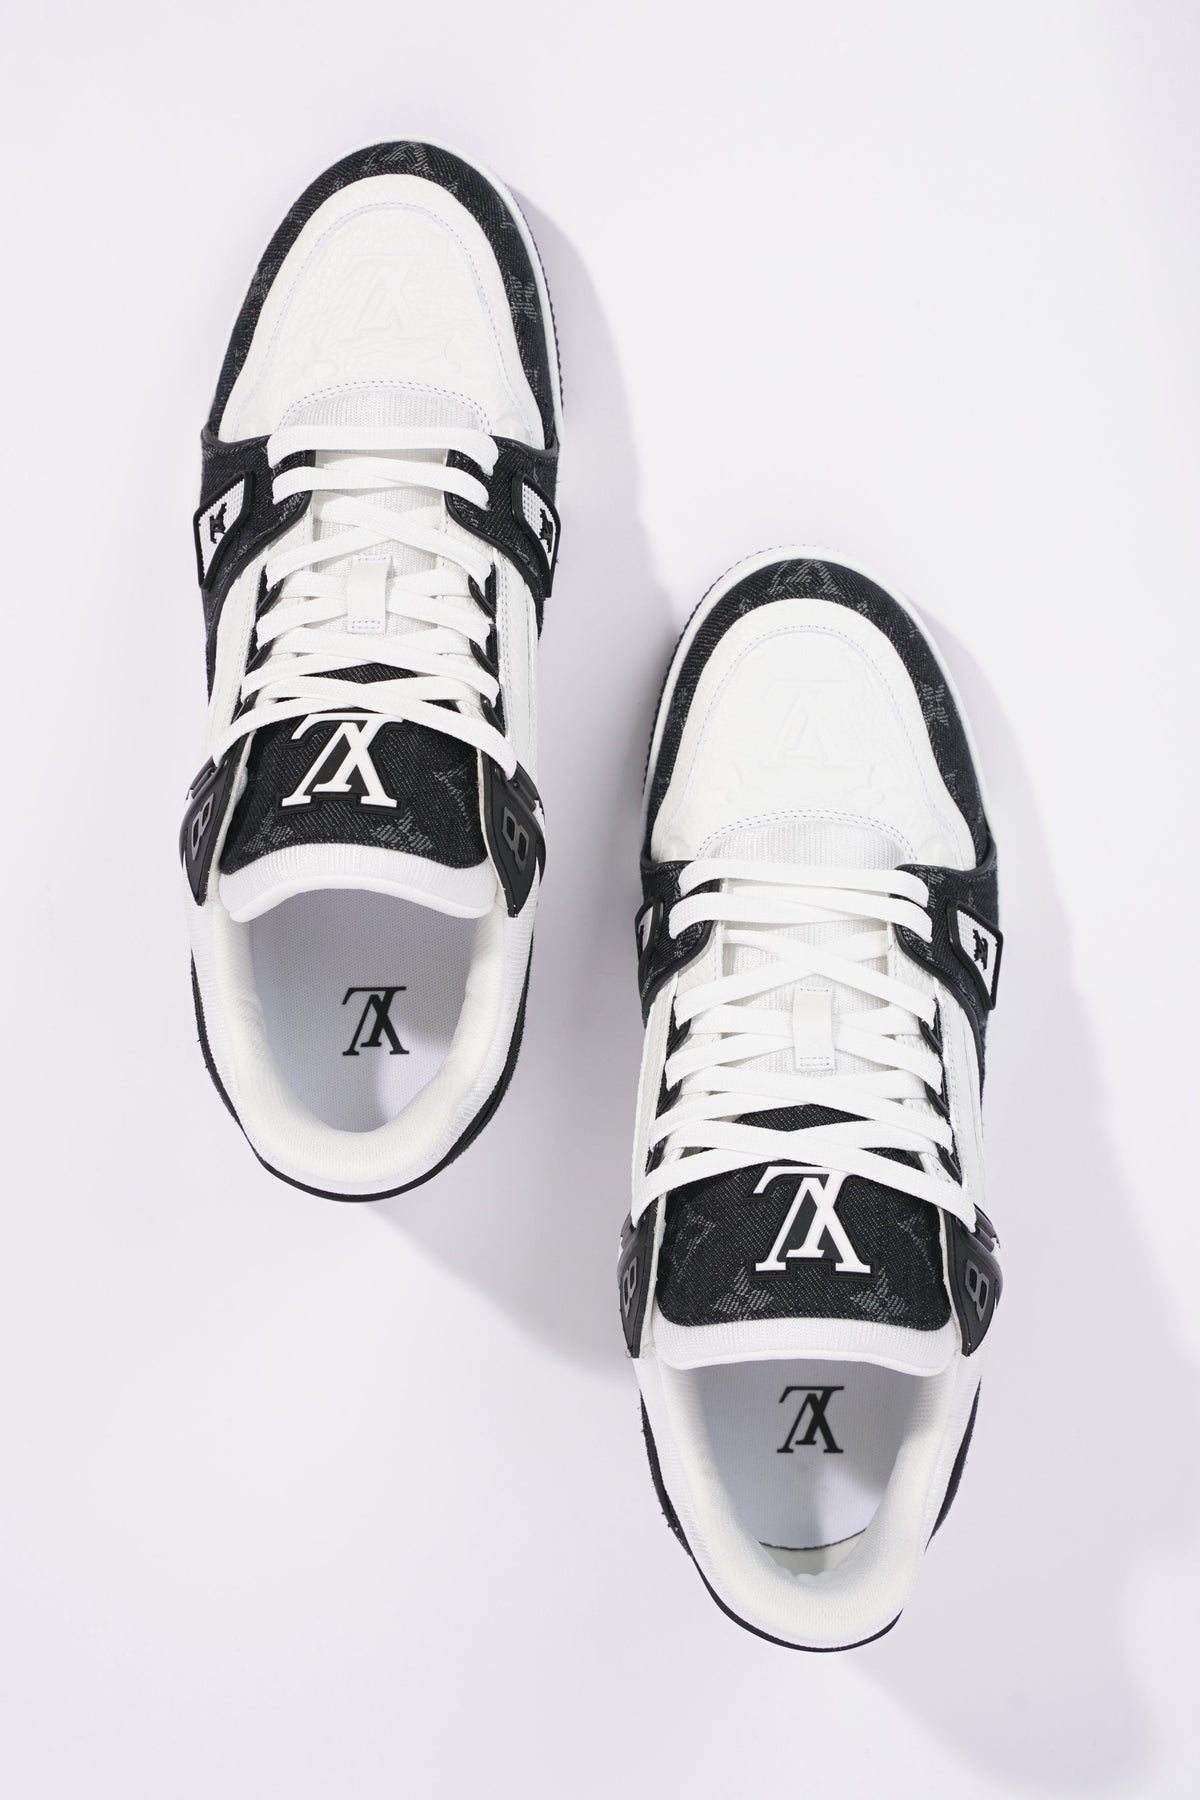 Louis Vuitton Mens Virgil Abloh Sneaker White / Black EU 42.5 / UK